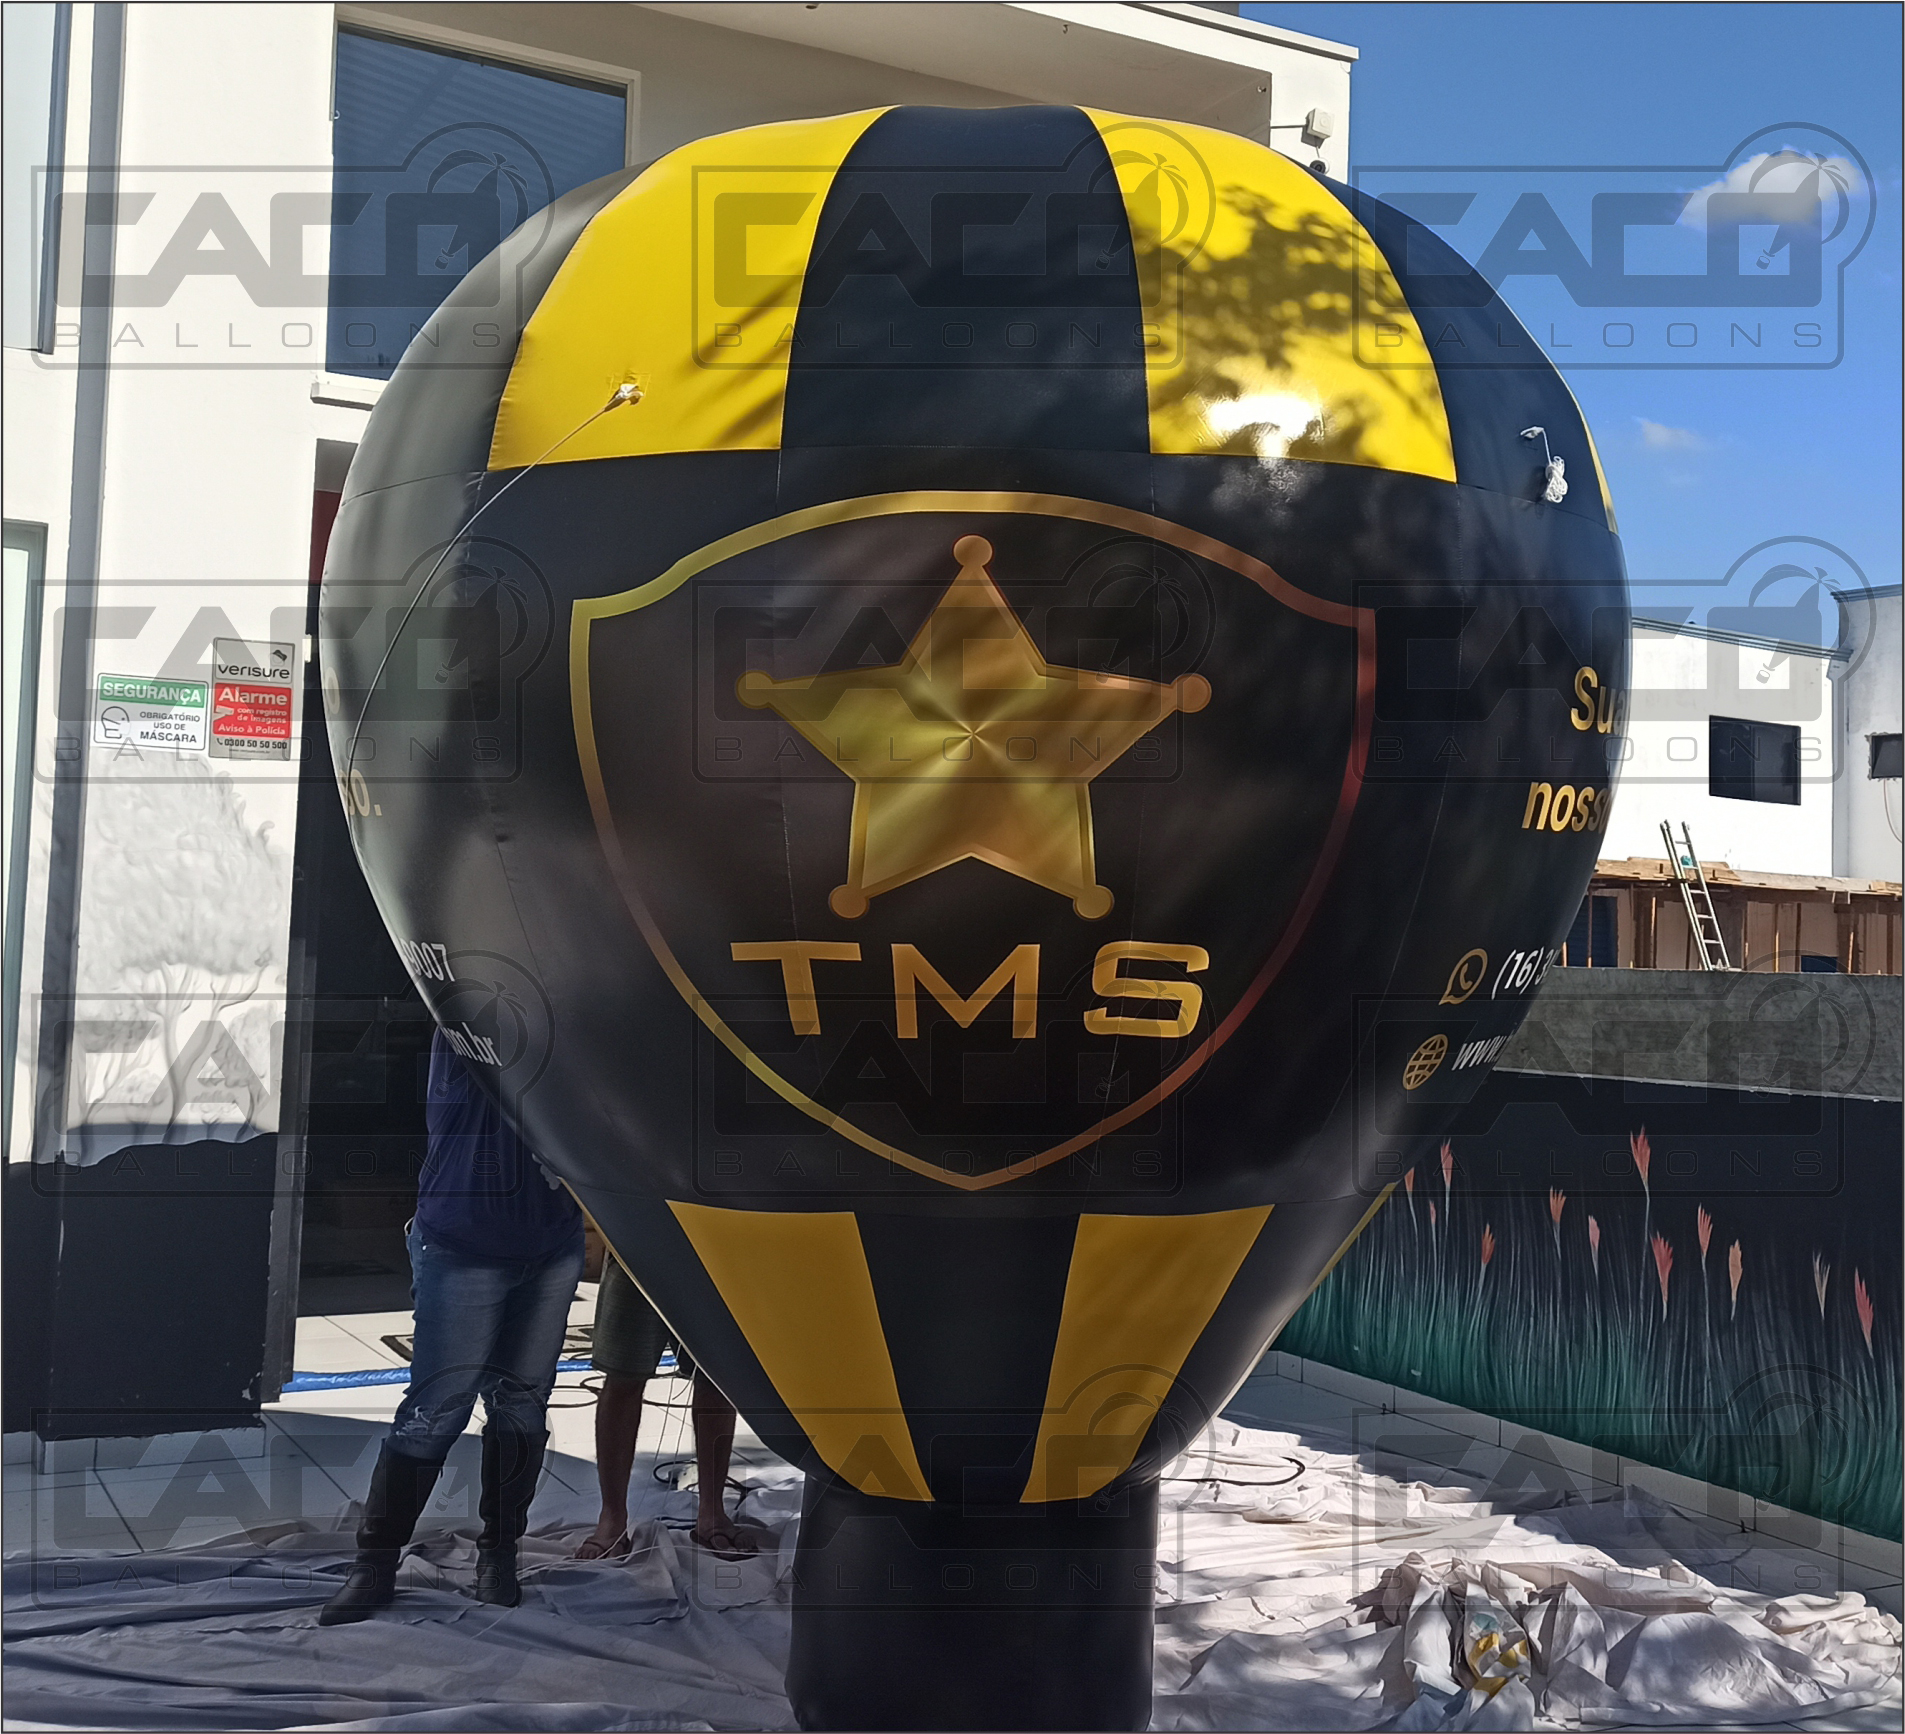 Balão inflável propaganda